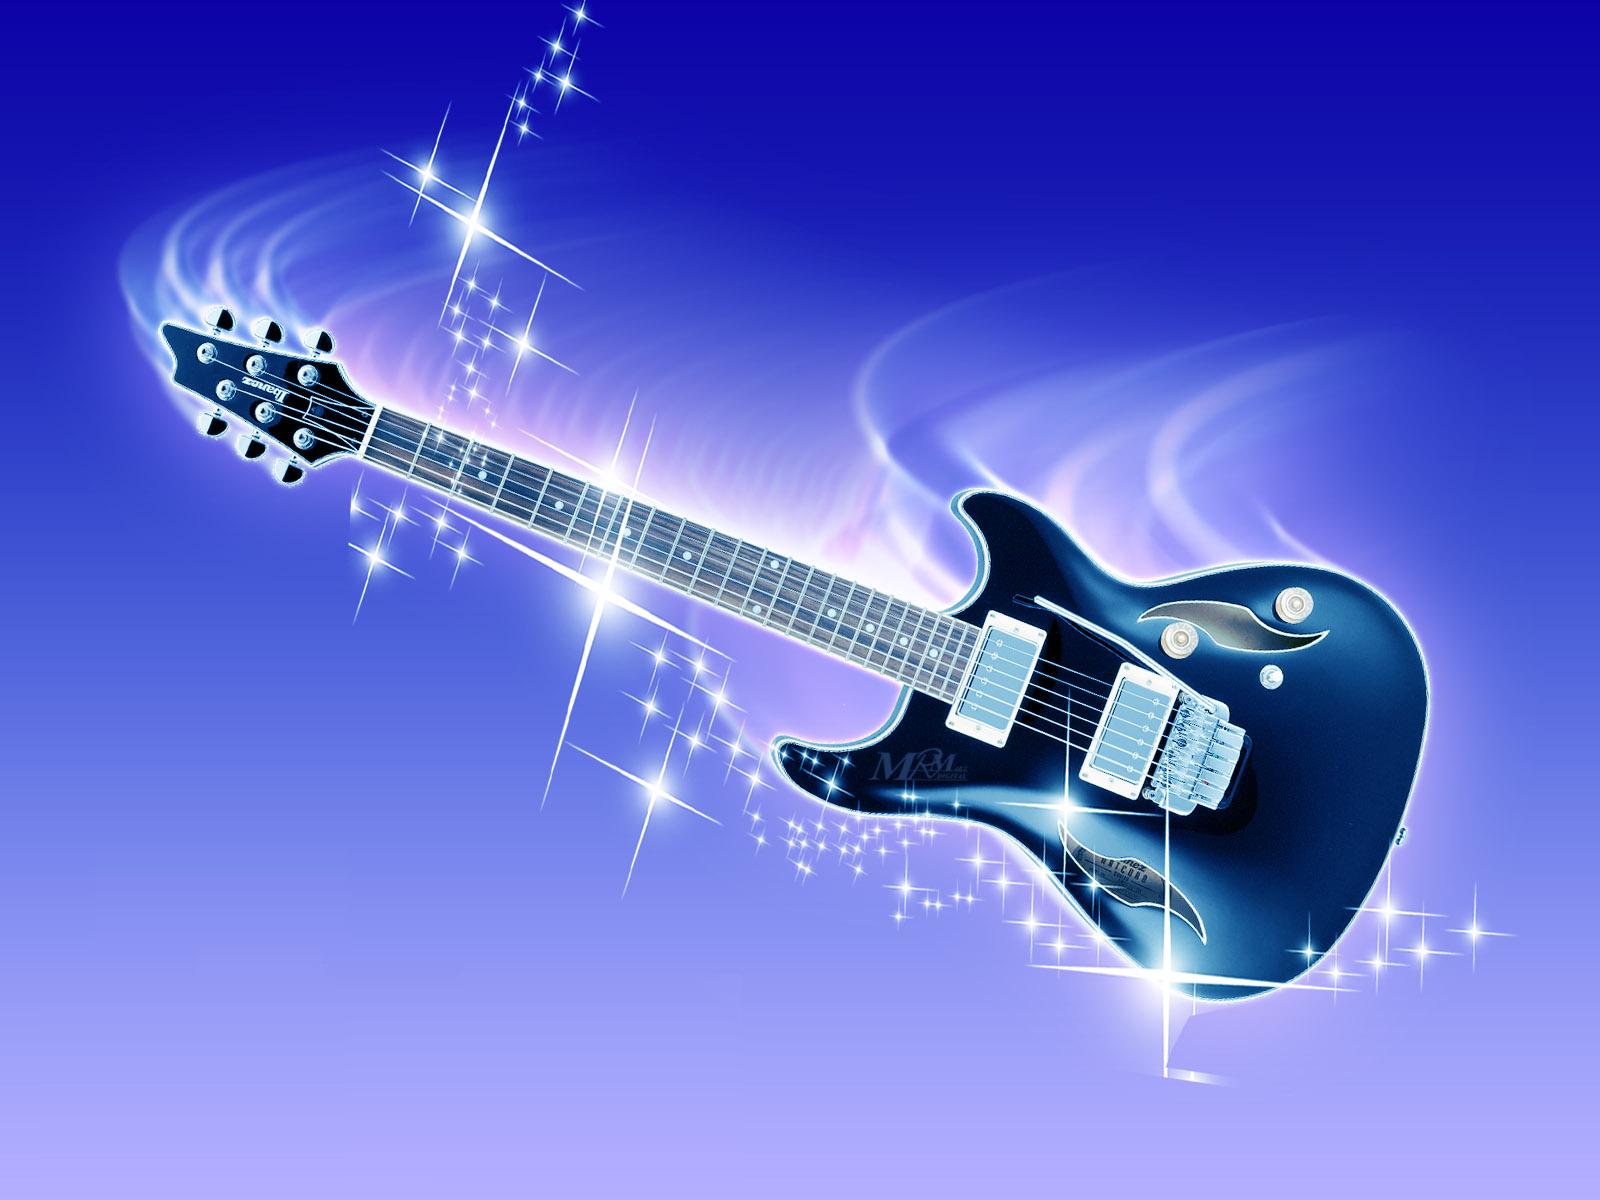 saurabh name wallpaper,gitarre,elektrische gitarre,gezupfte saiteninstrumente,musikinstrument,gitarrist